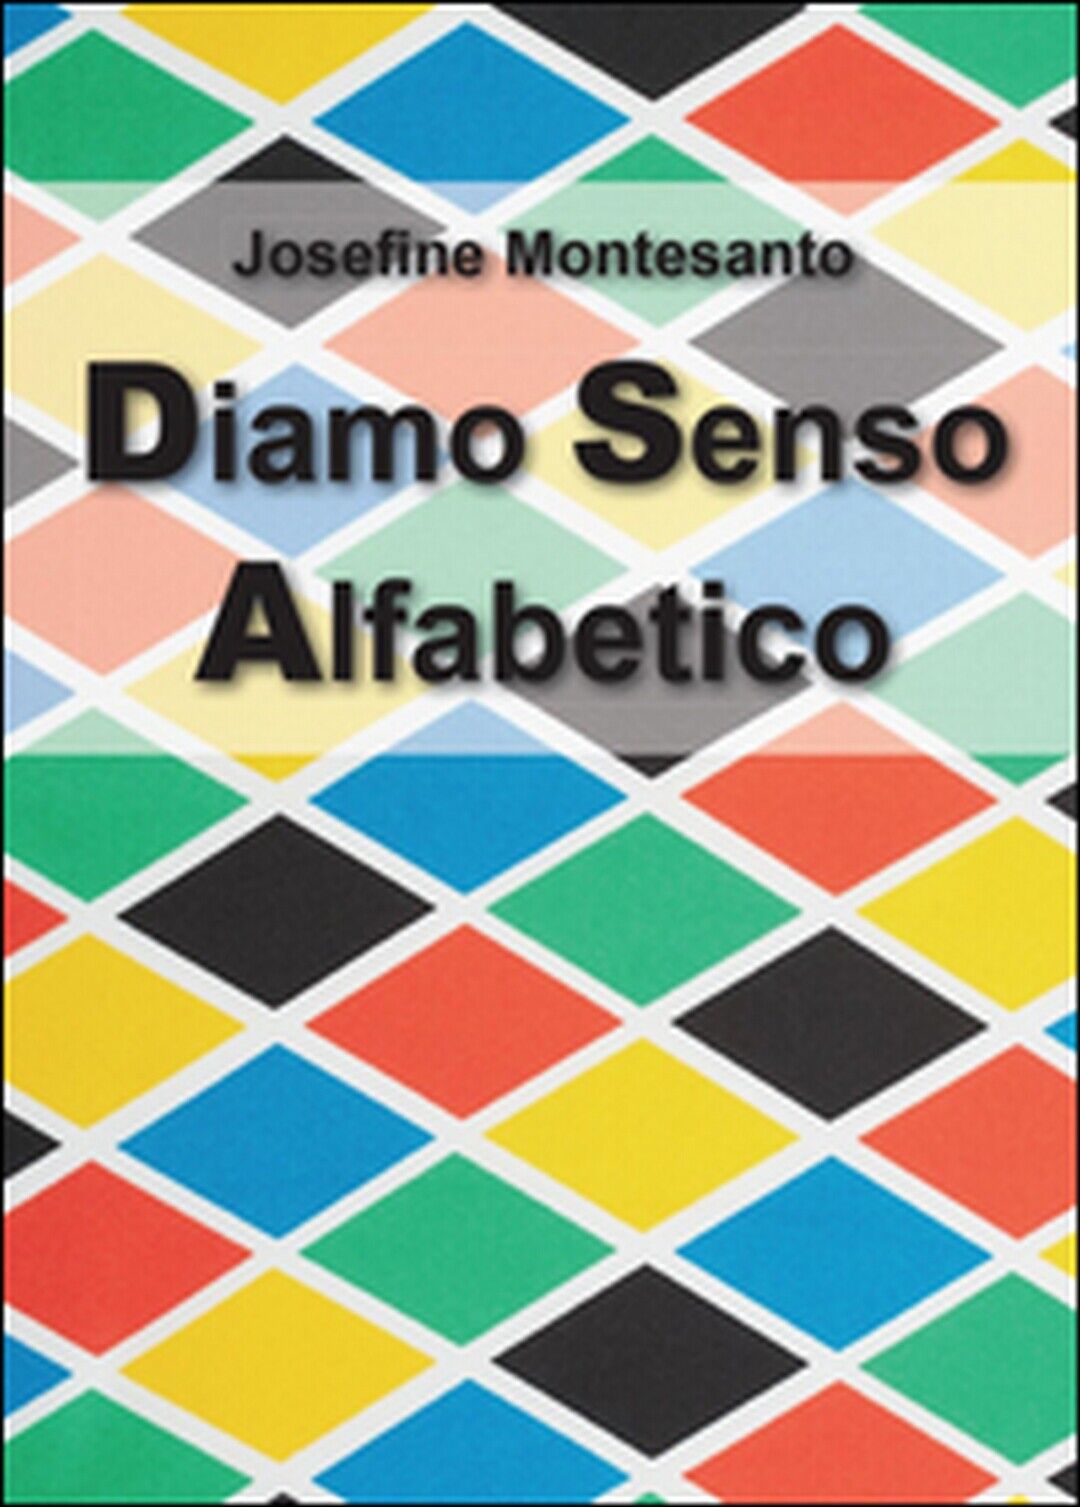 Diamo senso alfabetico, di Josefine Montesanto,  2015,  Youcanprint